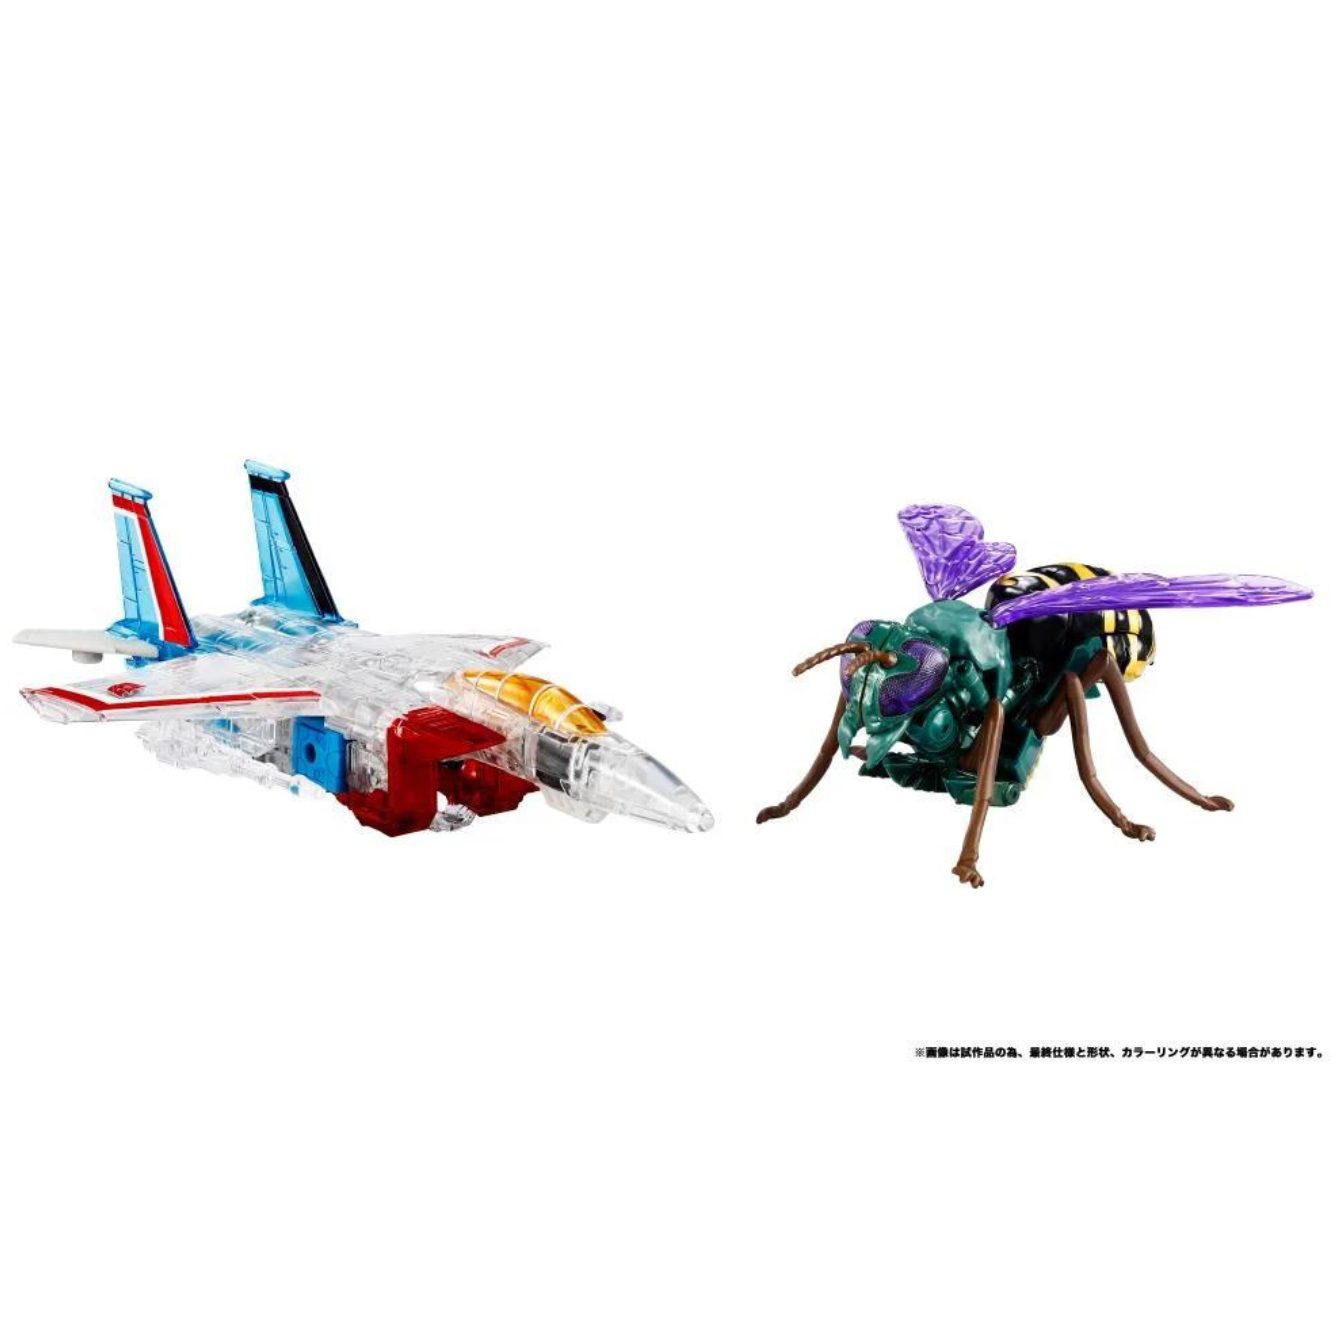 Transformers: Beast Wars BWVS-08 Starscream vs Waspinator (Premium Finish) Two-Pack